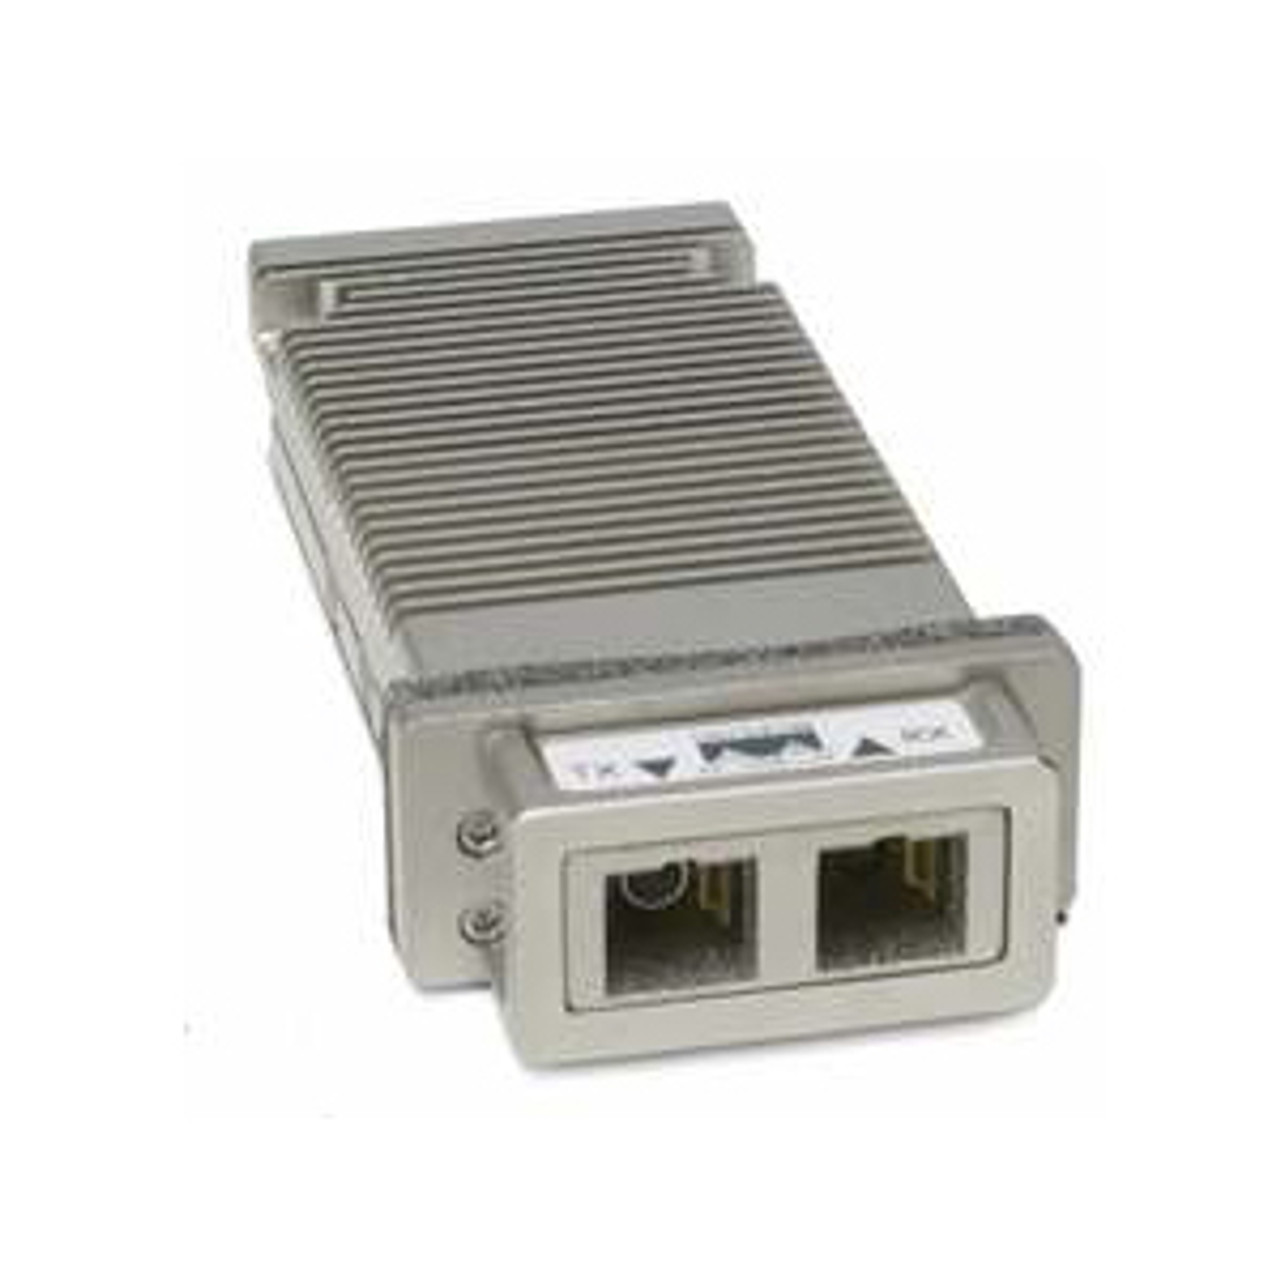 DWDM-X2-40.56= Cisco 10Gbps 10GBase-DWDM Single-mode Fiber 80km 1540.56nm Duplex SC Connector X2 Transceiver Module (Refurbished)